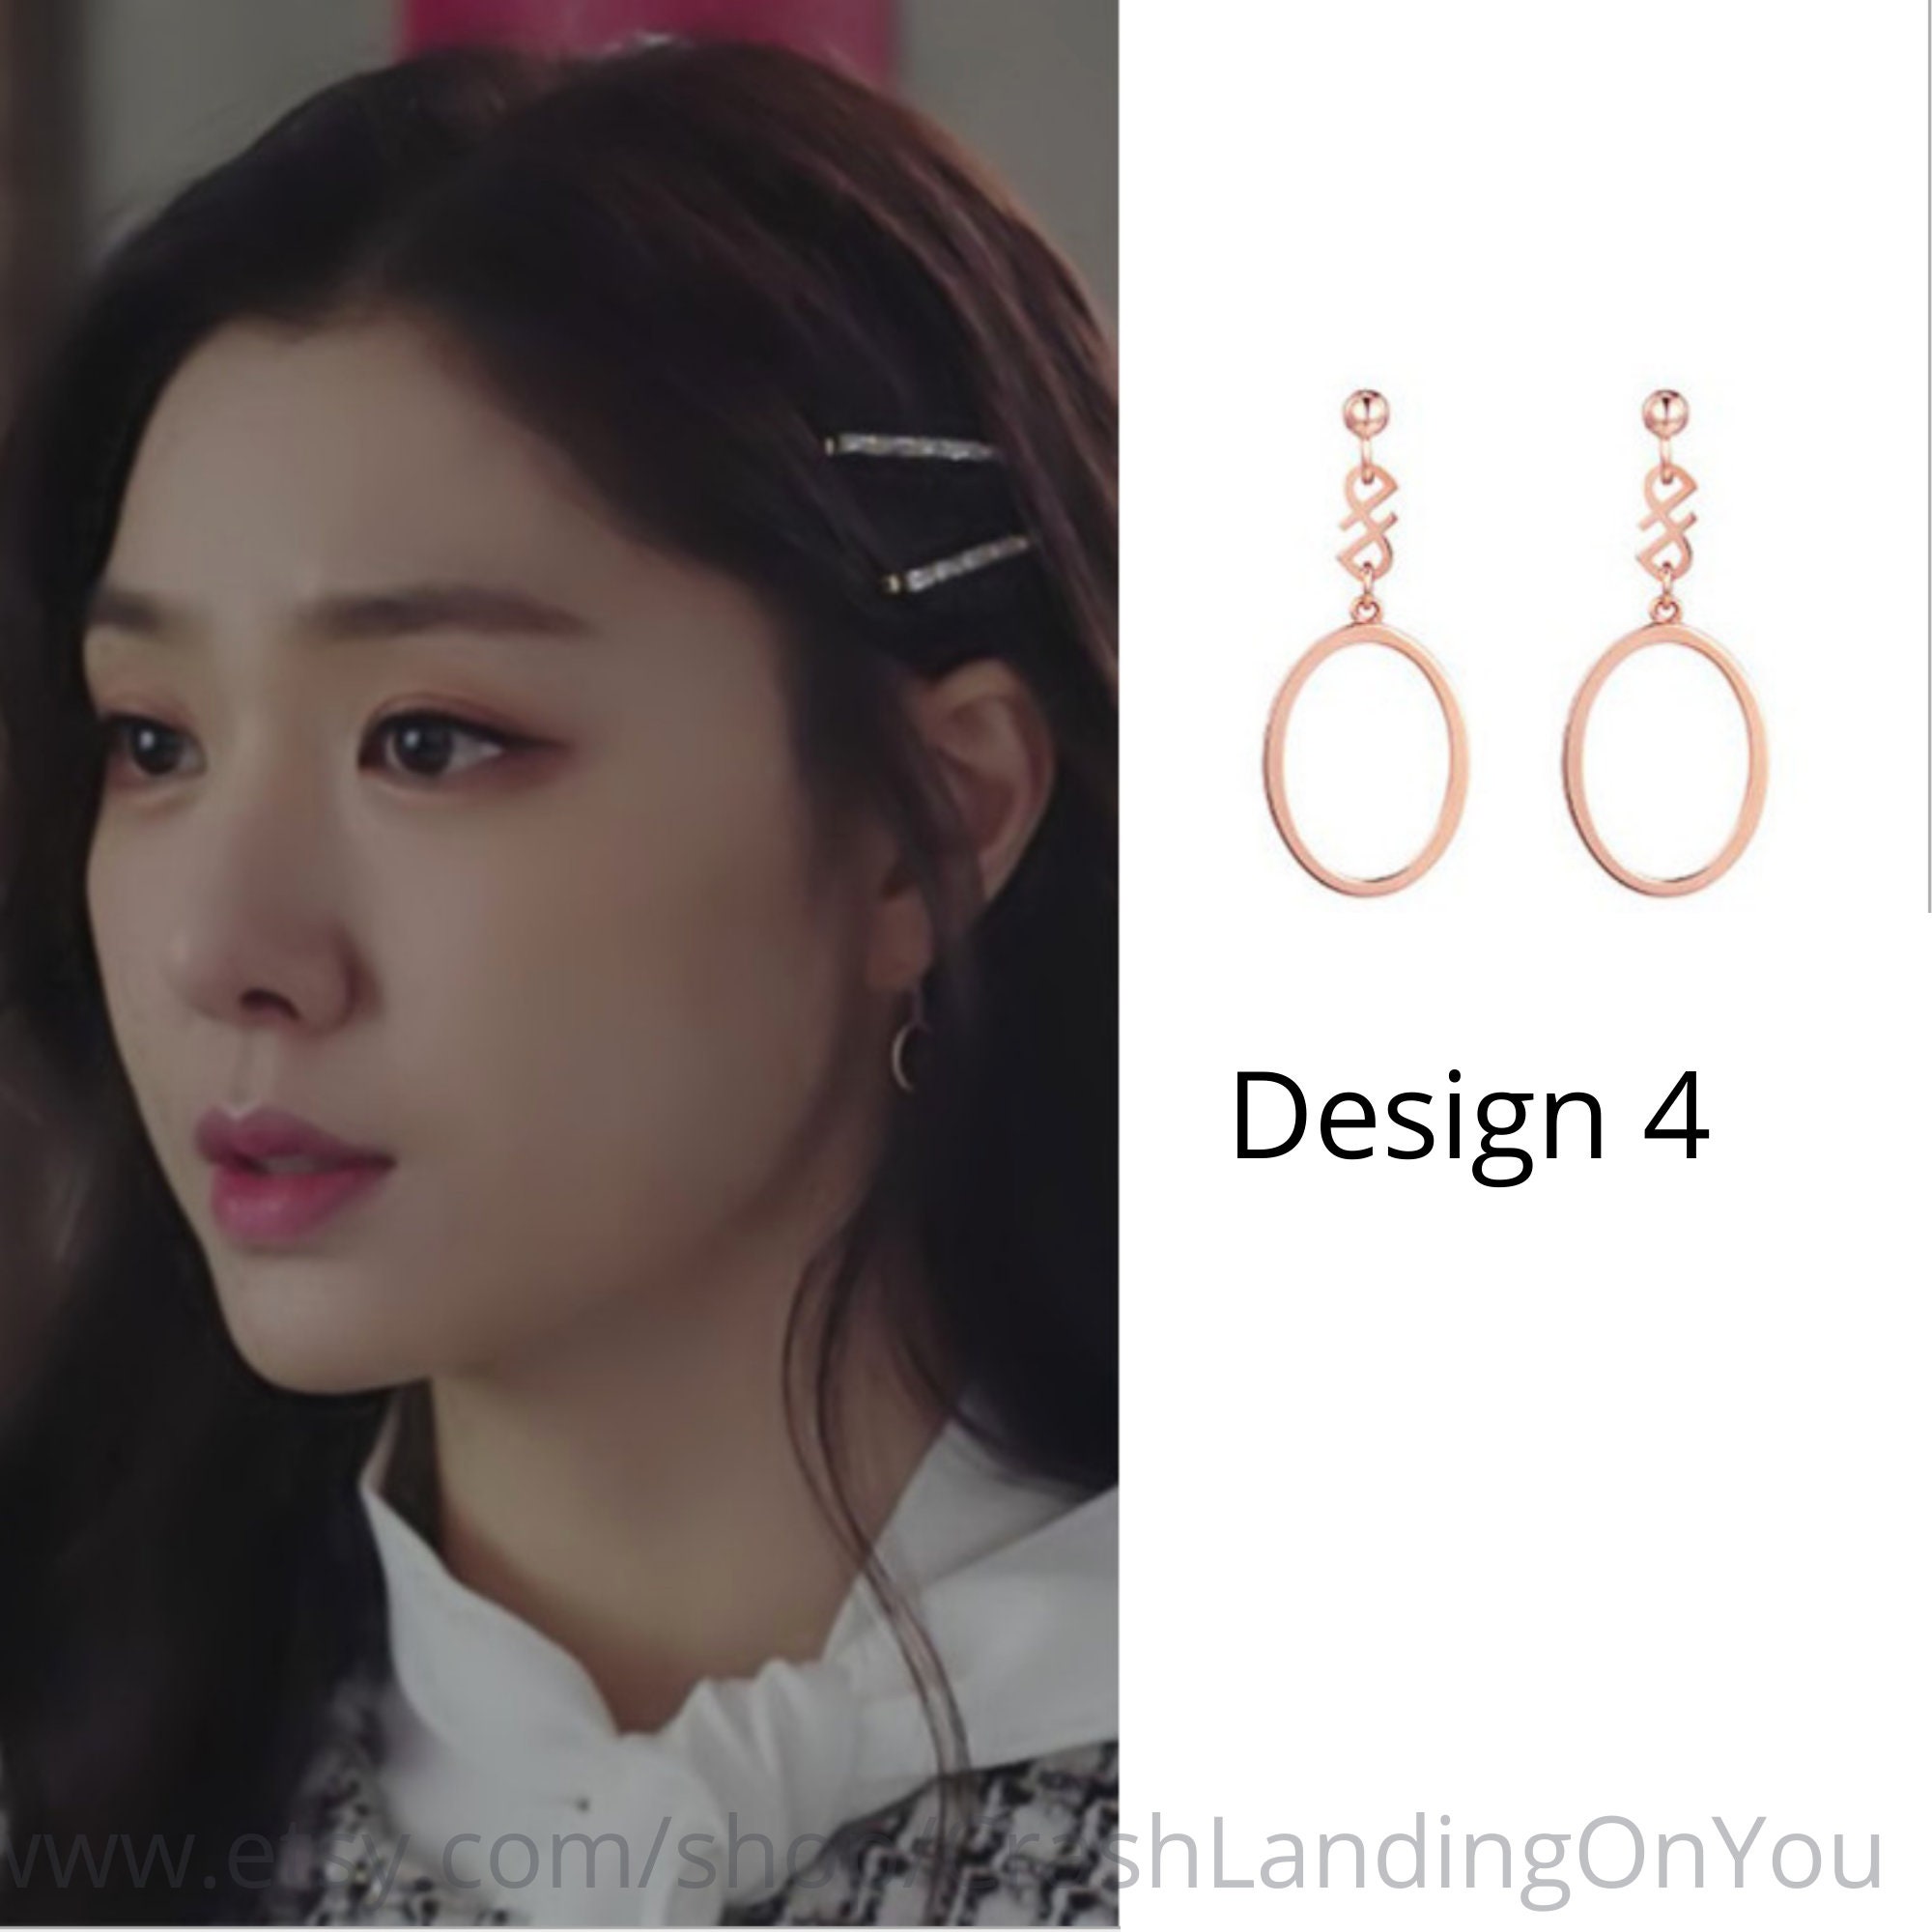 Crash Landing on You Earrings as Seen on Seo Dan Seo Ji-hye | Etsy